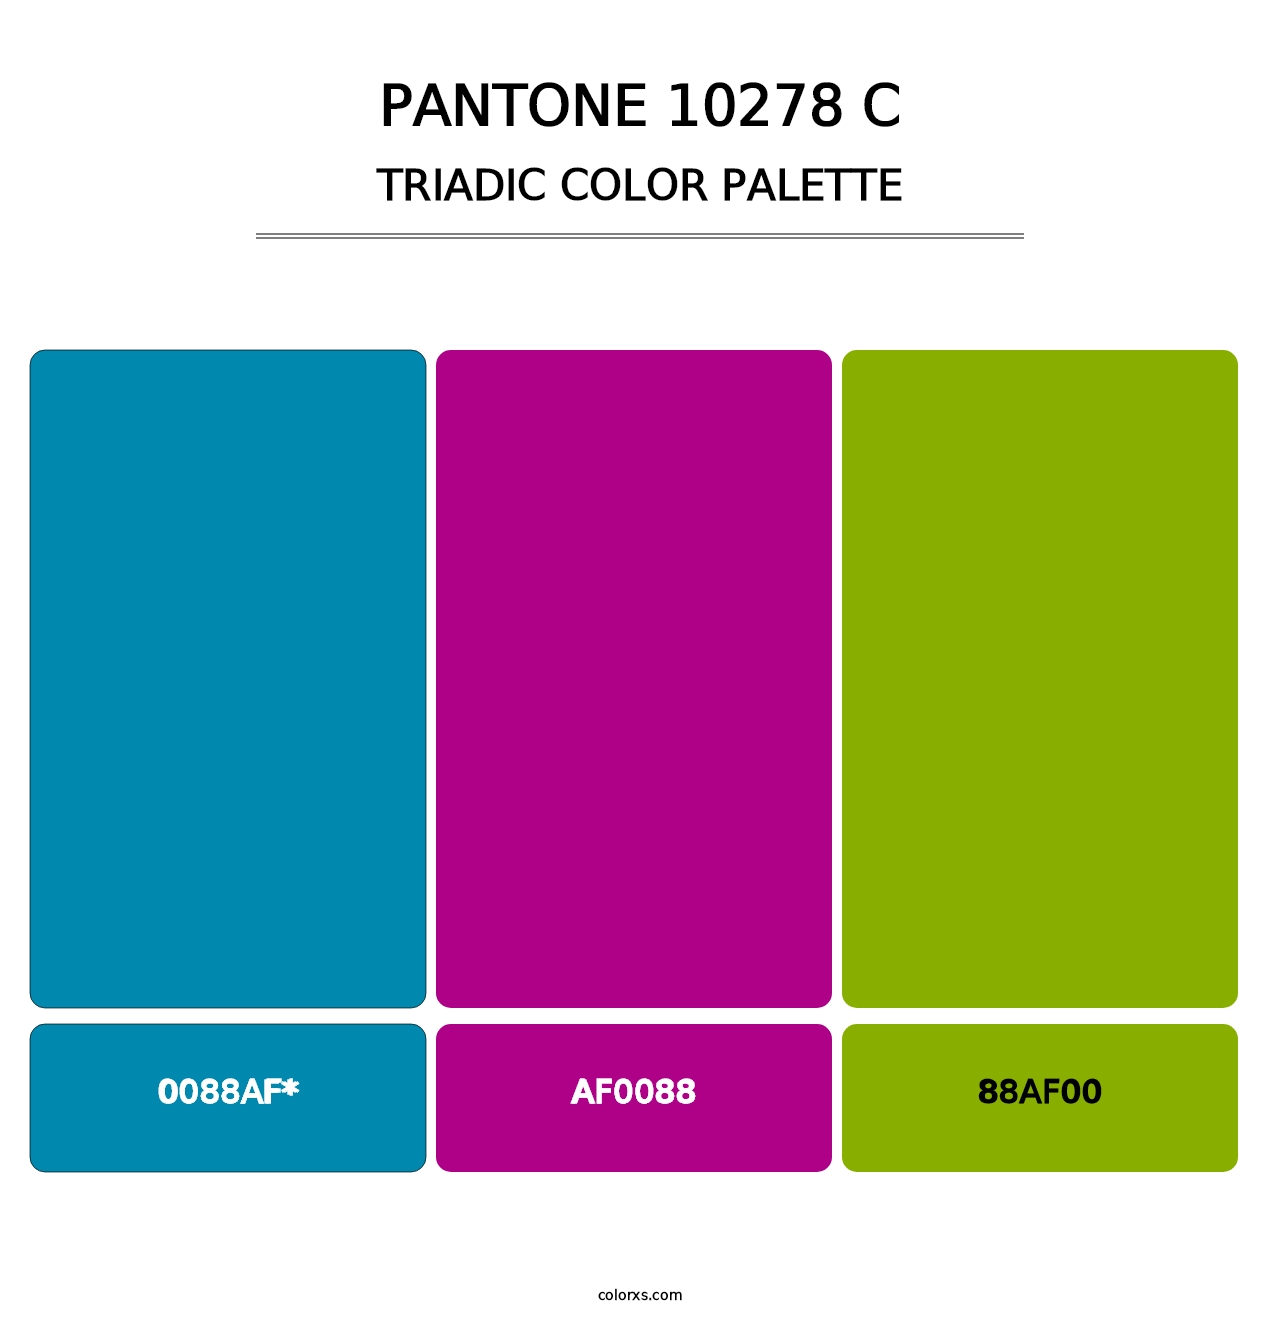 PANTONE 10278 C - Triadic Color Palette